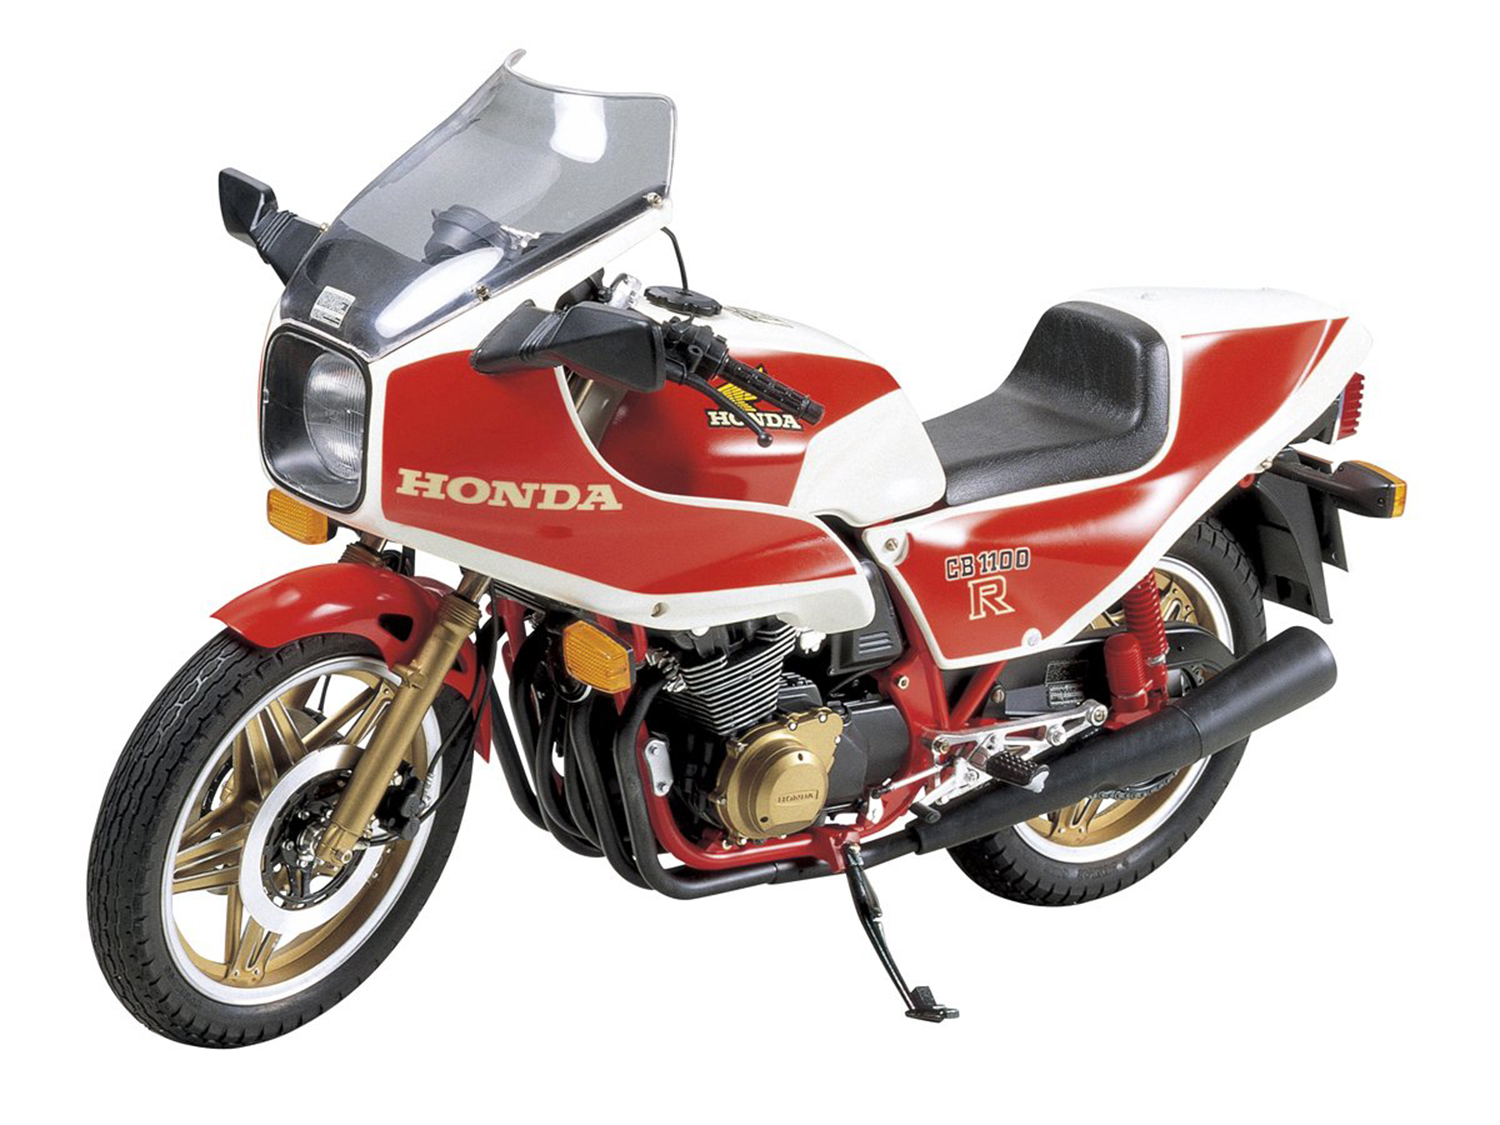 Replicas exactas en miniatura de motos clásicas  Motorcycle model,  Motorcycle model kits, Motorcycle